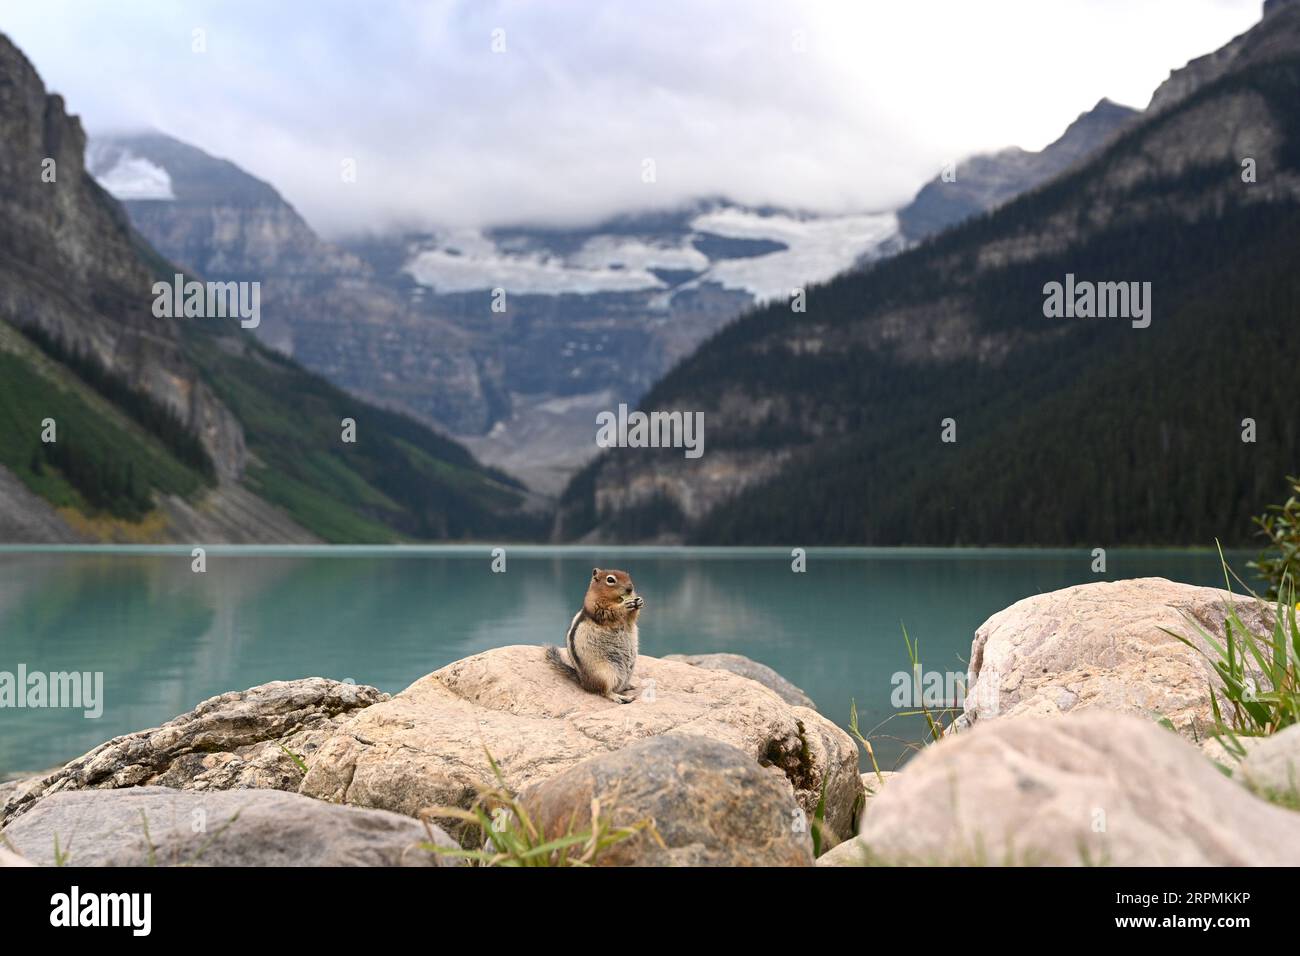 Ein Chipmunk in der Nähe des Lake Louise. Kanadische Tierwelt. Banff National Park Stockfoto